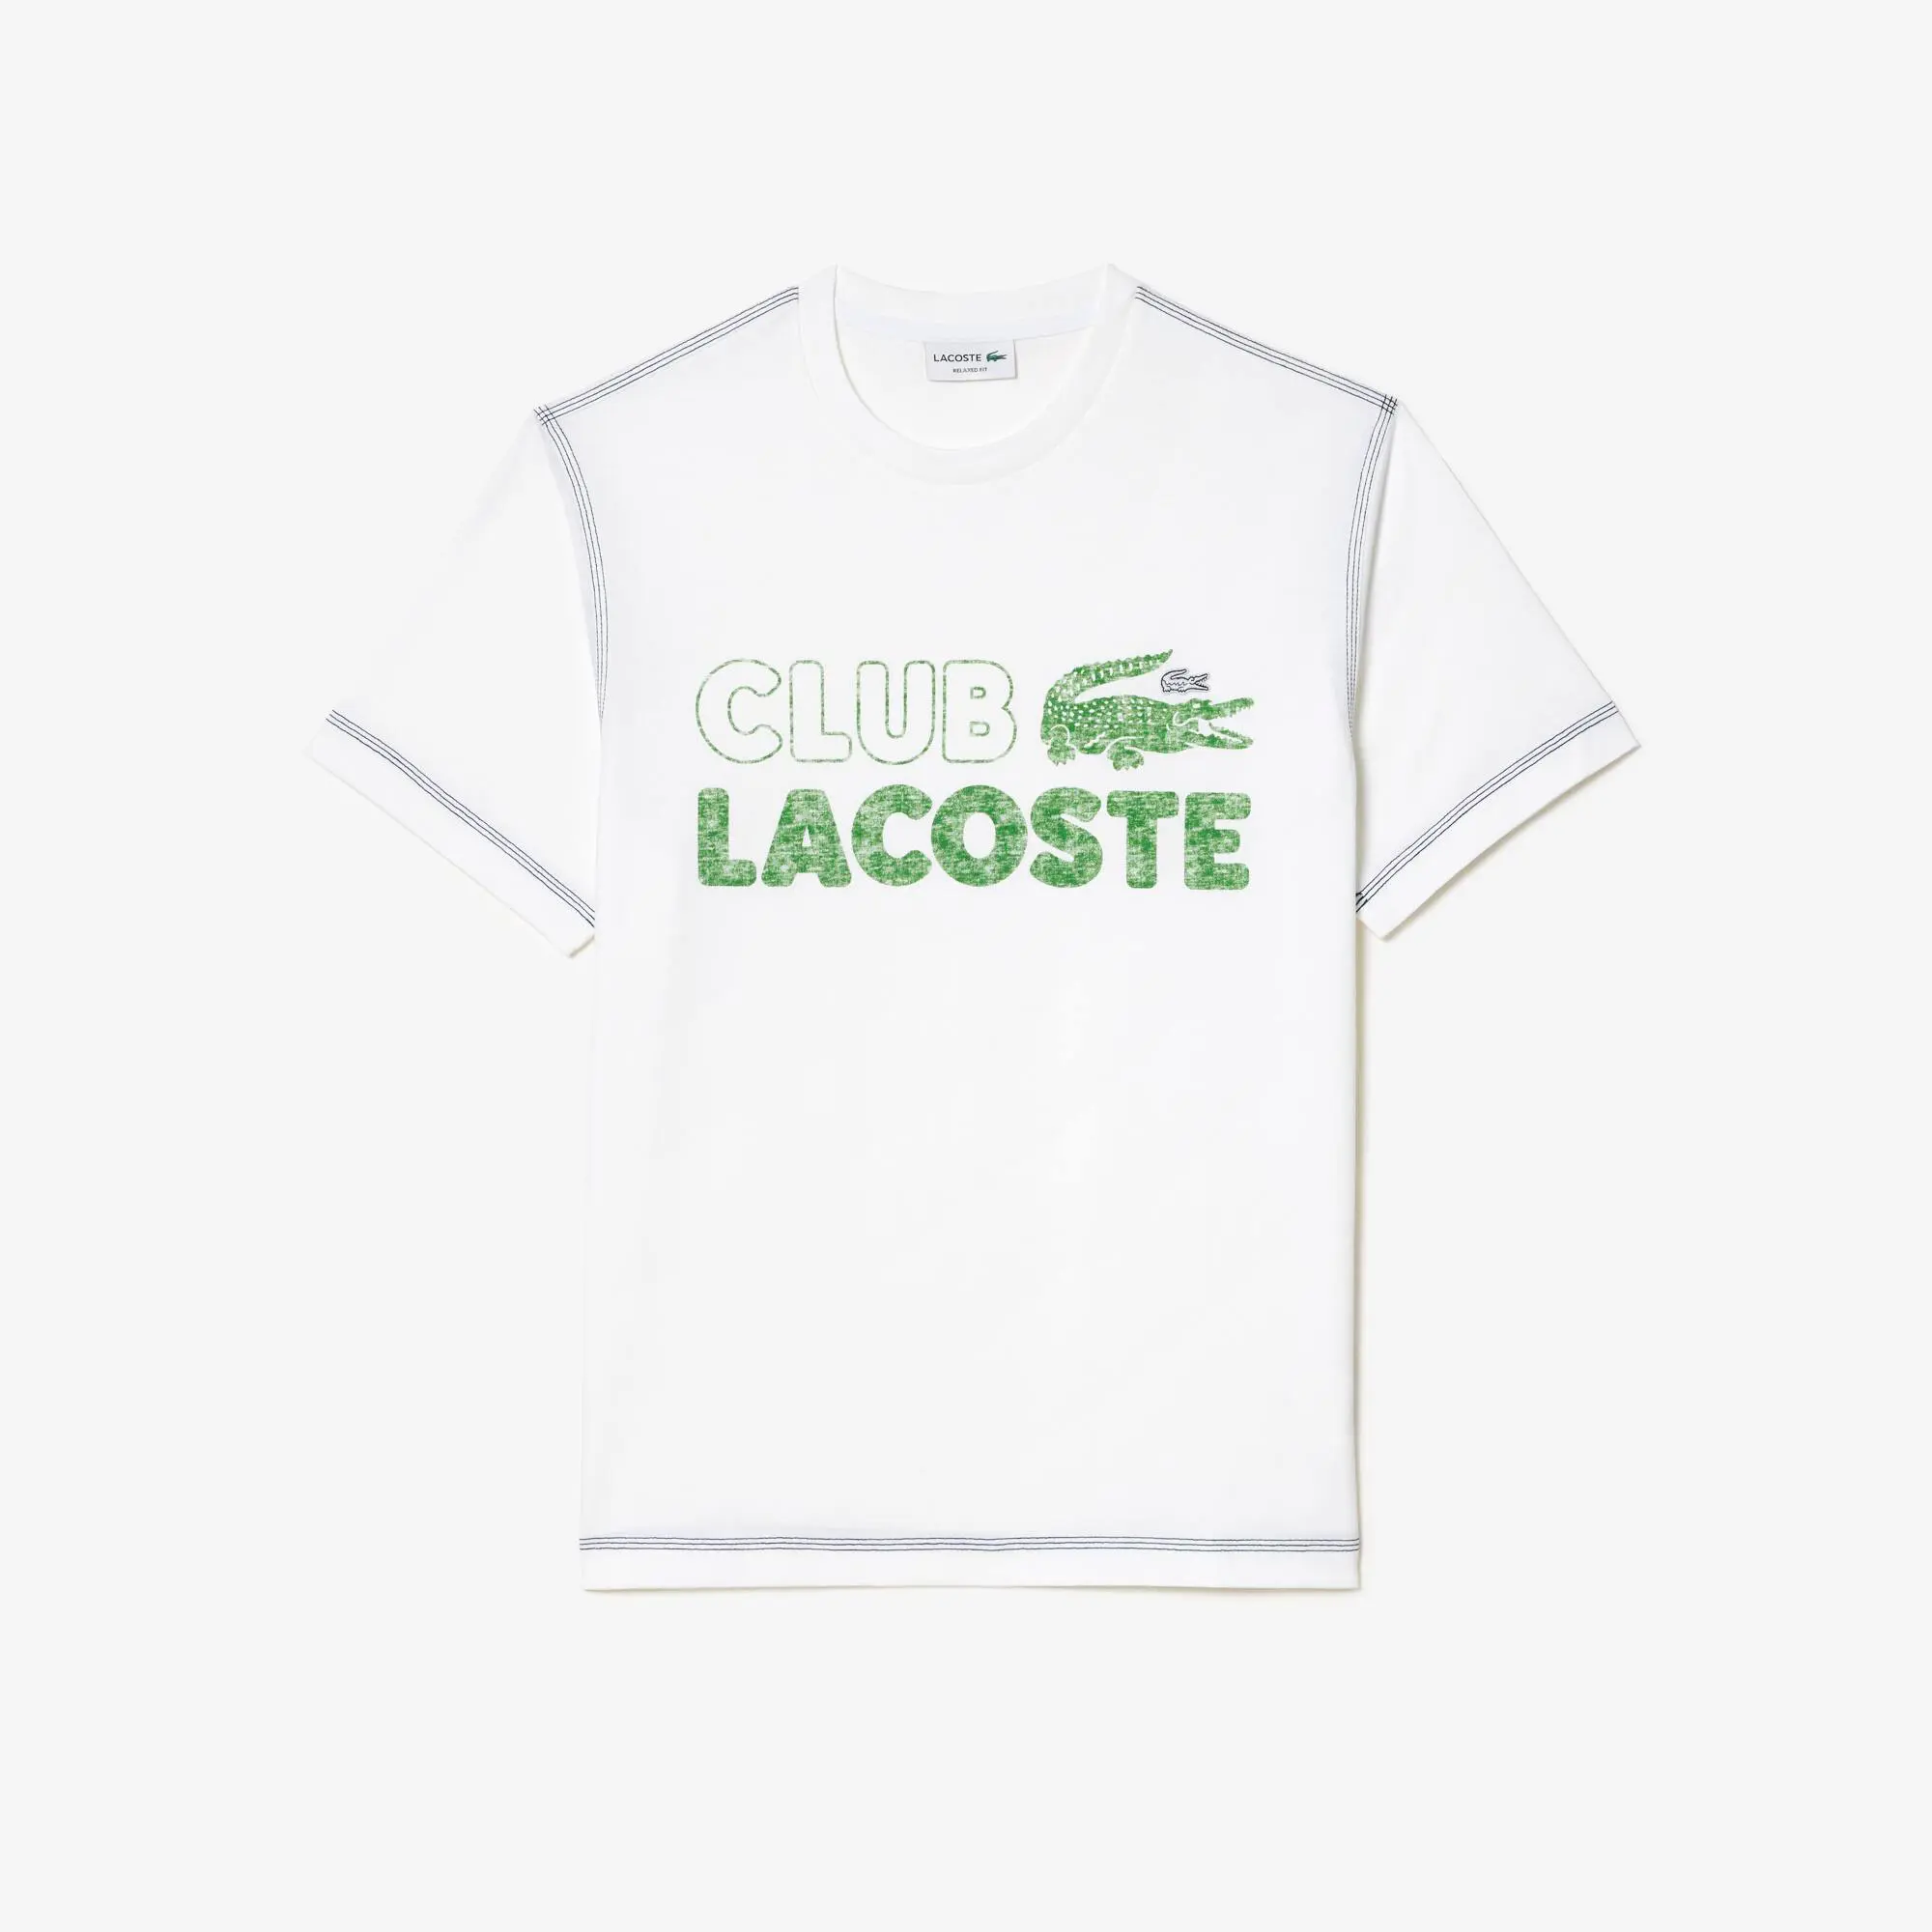 Lacoste Men’s Lacoste Vintage Print Organic Cotton T-shirt. 2